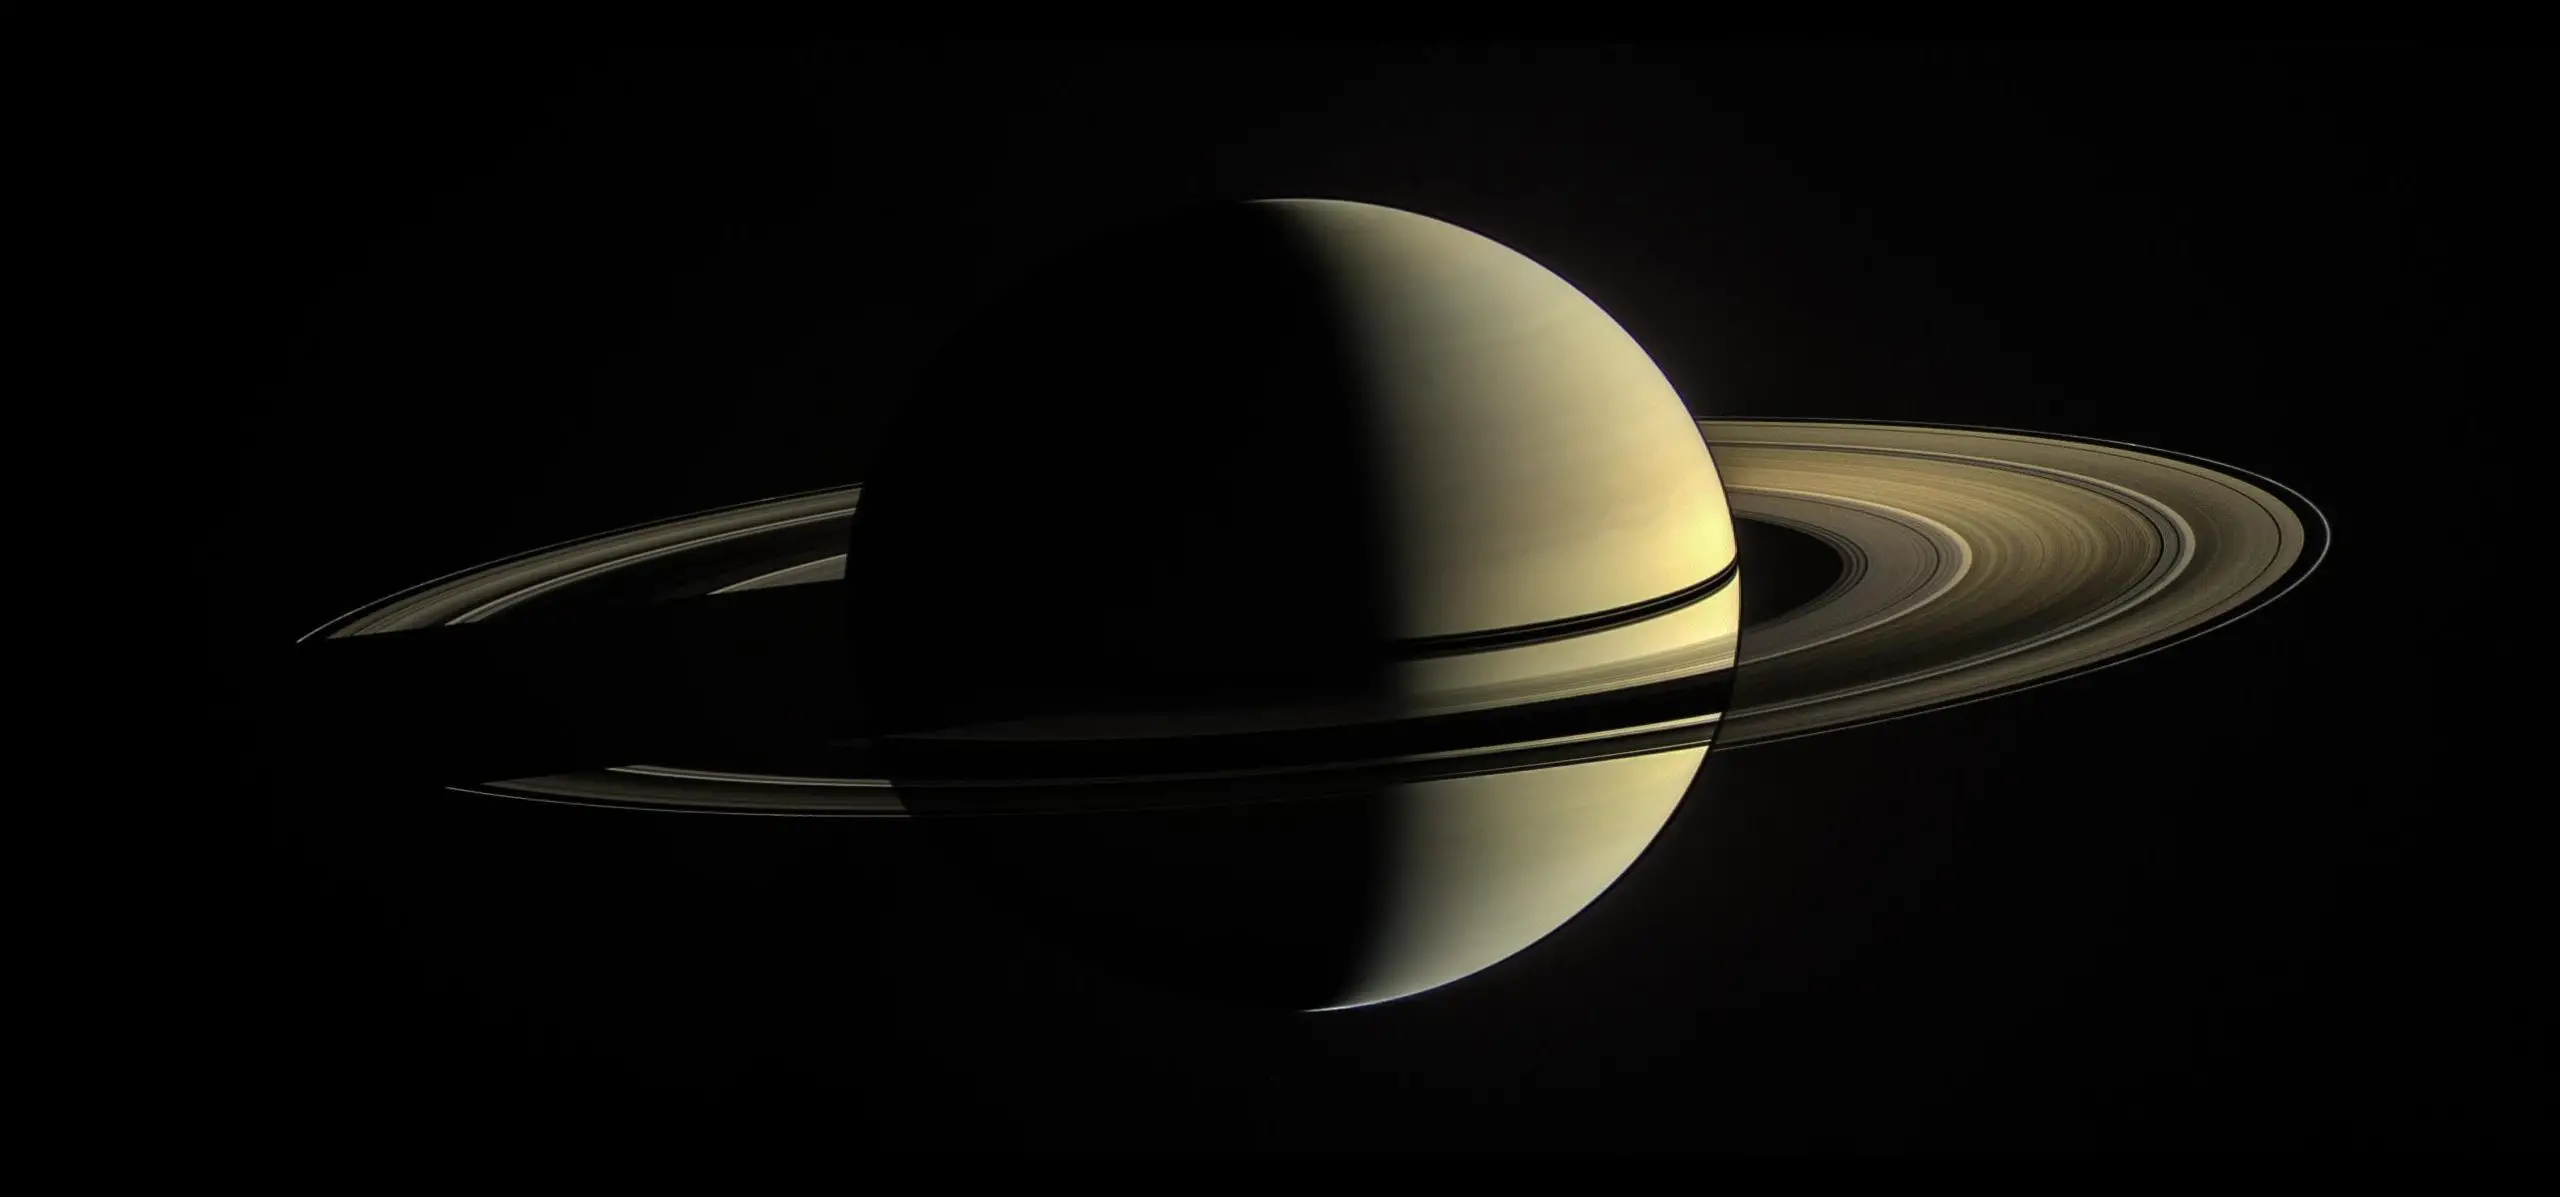 De ringen van Saturnus zijn klein en kunnen snel verdwijnen